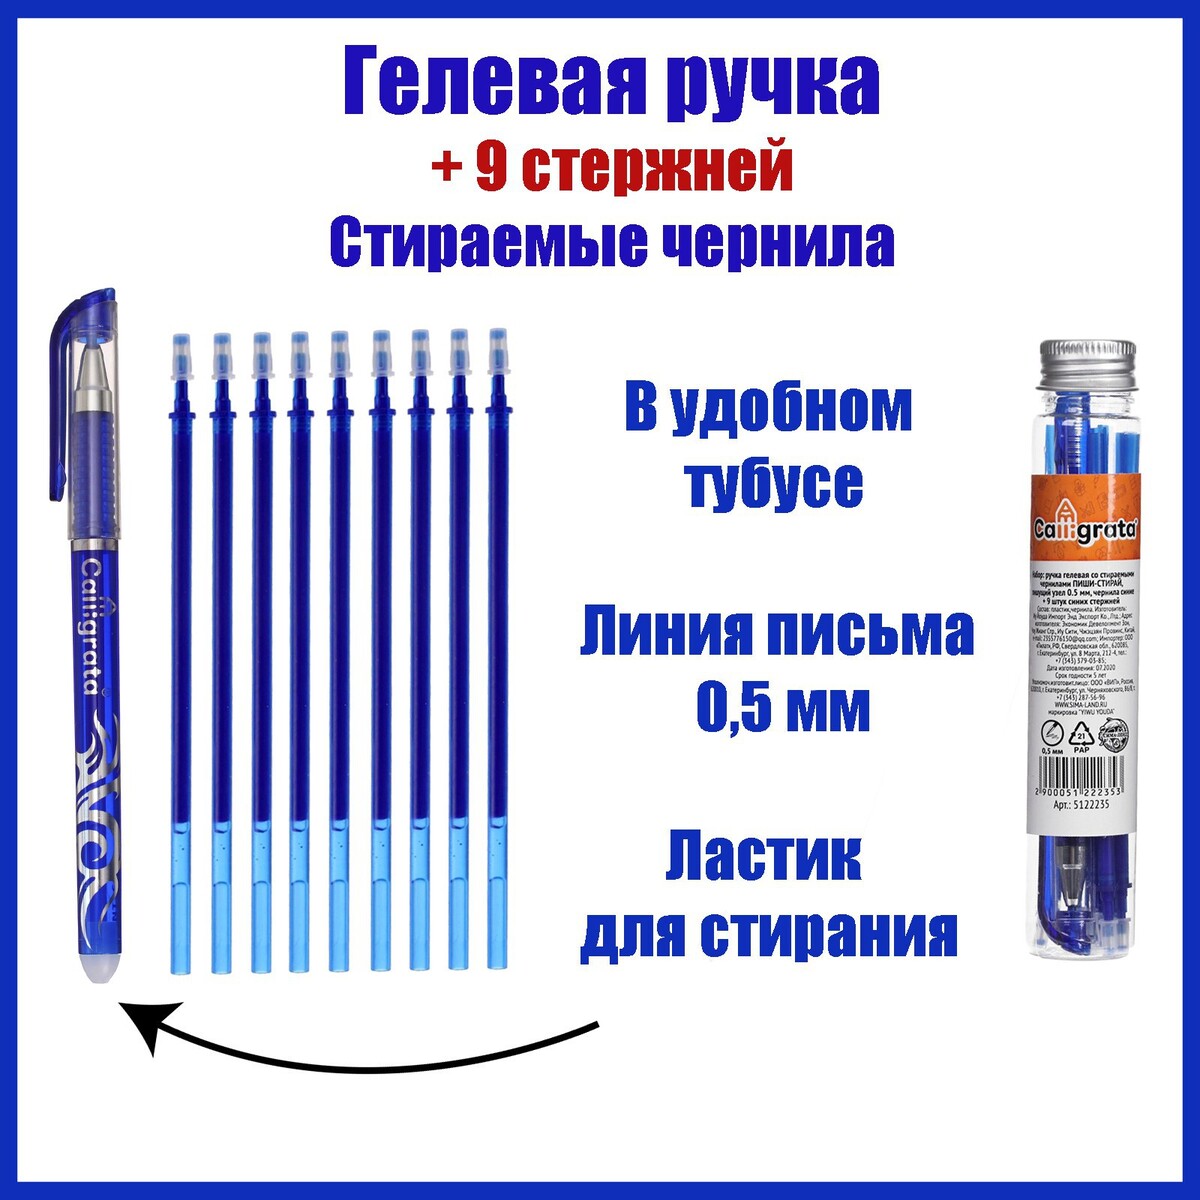 Набор ручка гелевая со стираемыми чернилами, пишущий узел 0.5 мм, чернила синие+9 синих стержней набор ручек со стираемыми чернилами 2 шт 4 стержня единорог минни маус